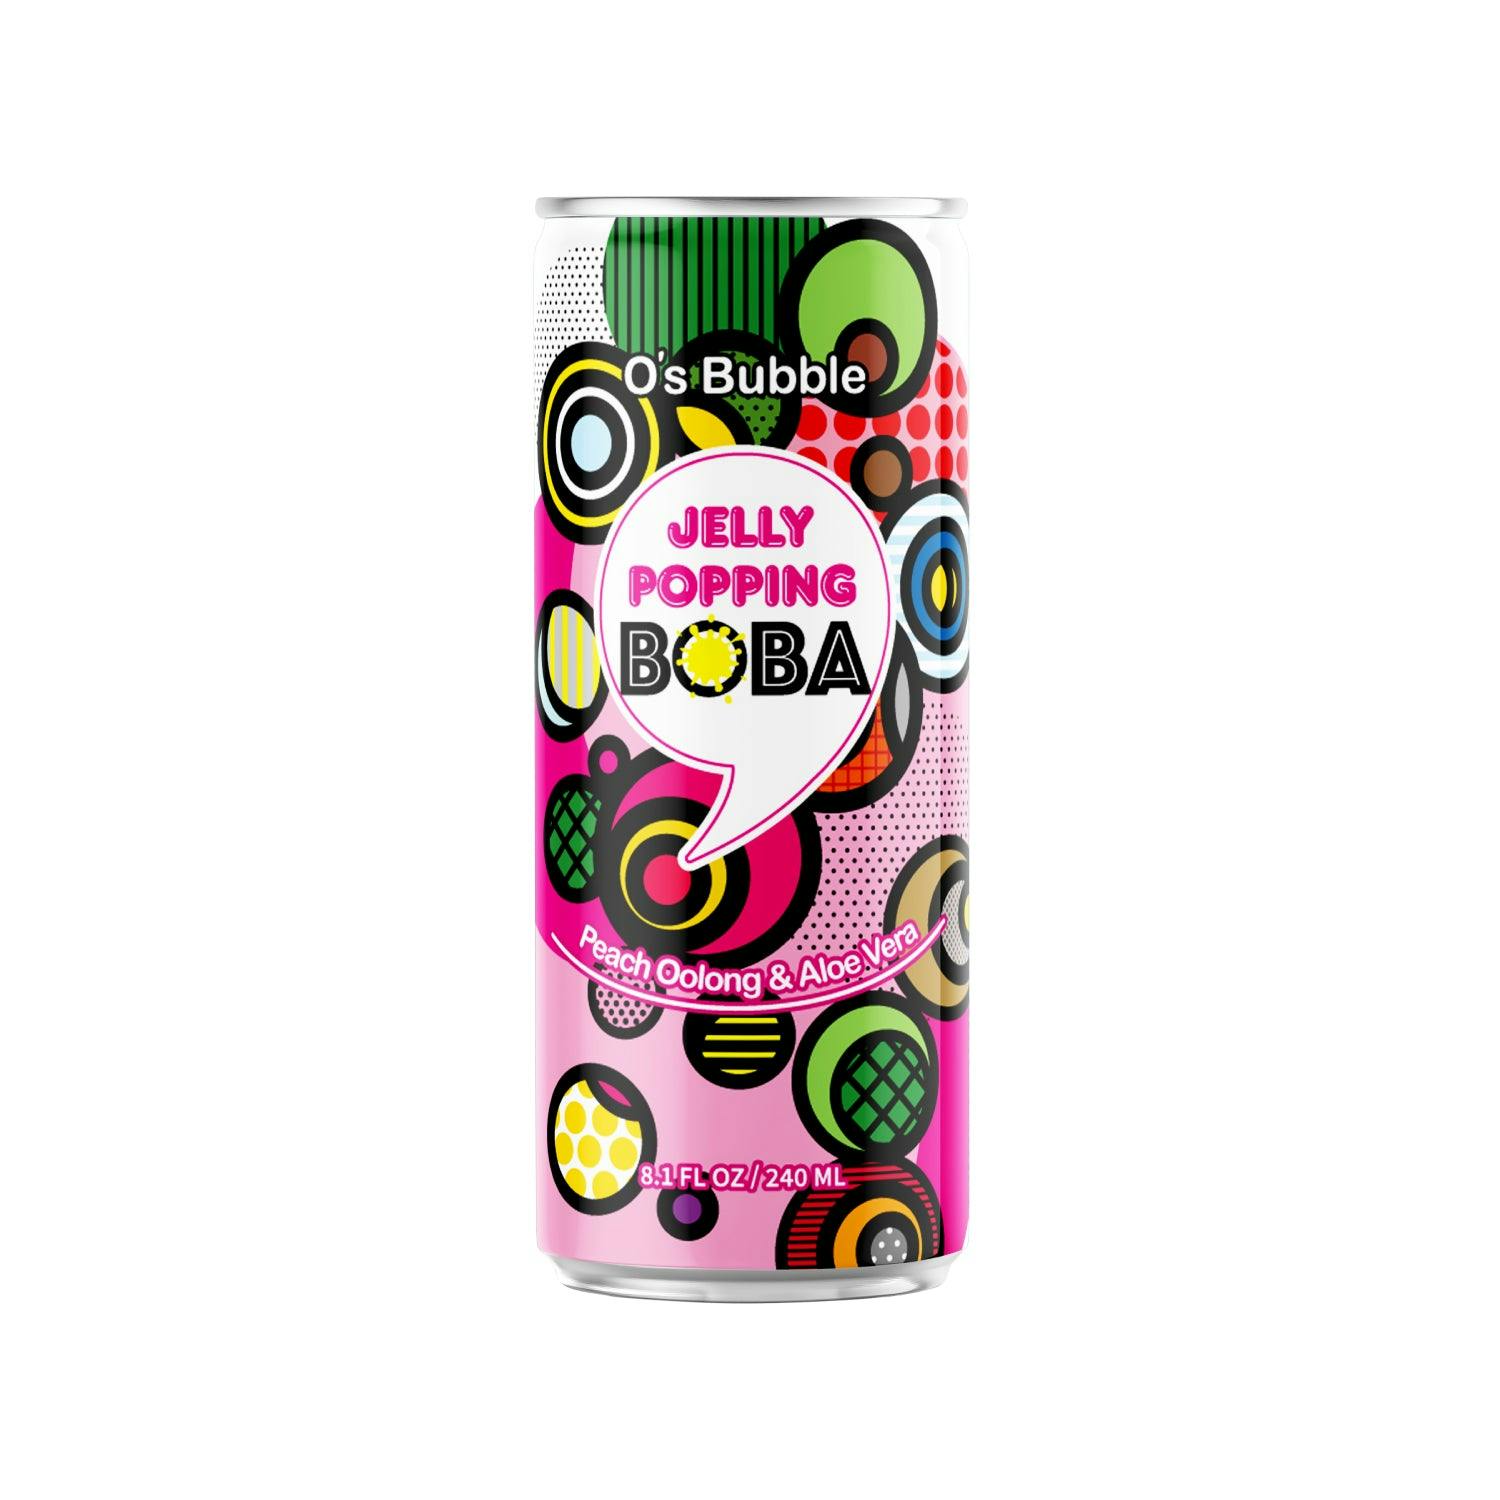 O’s Bubble Jelly Popping Boba Peach Oolong Tea w/ Aloe Vera 16.2oz 爆爆珠 桃子 乌龙茶 芦荟果粒